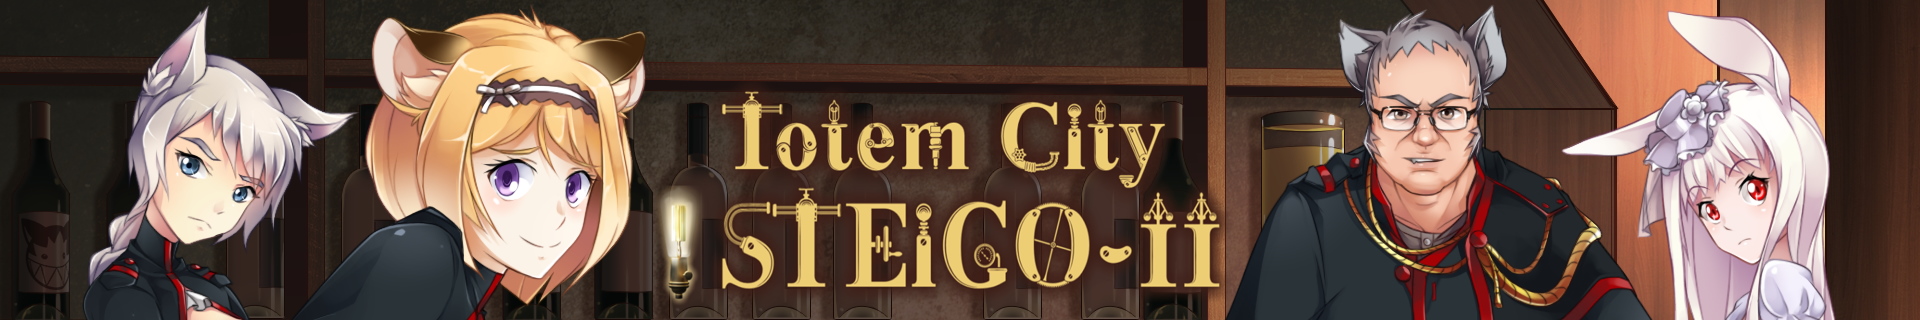 STEIGO-2. Totem City